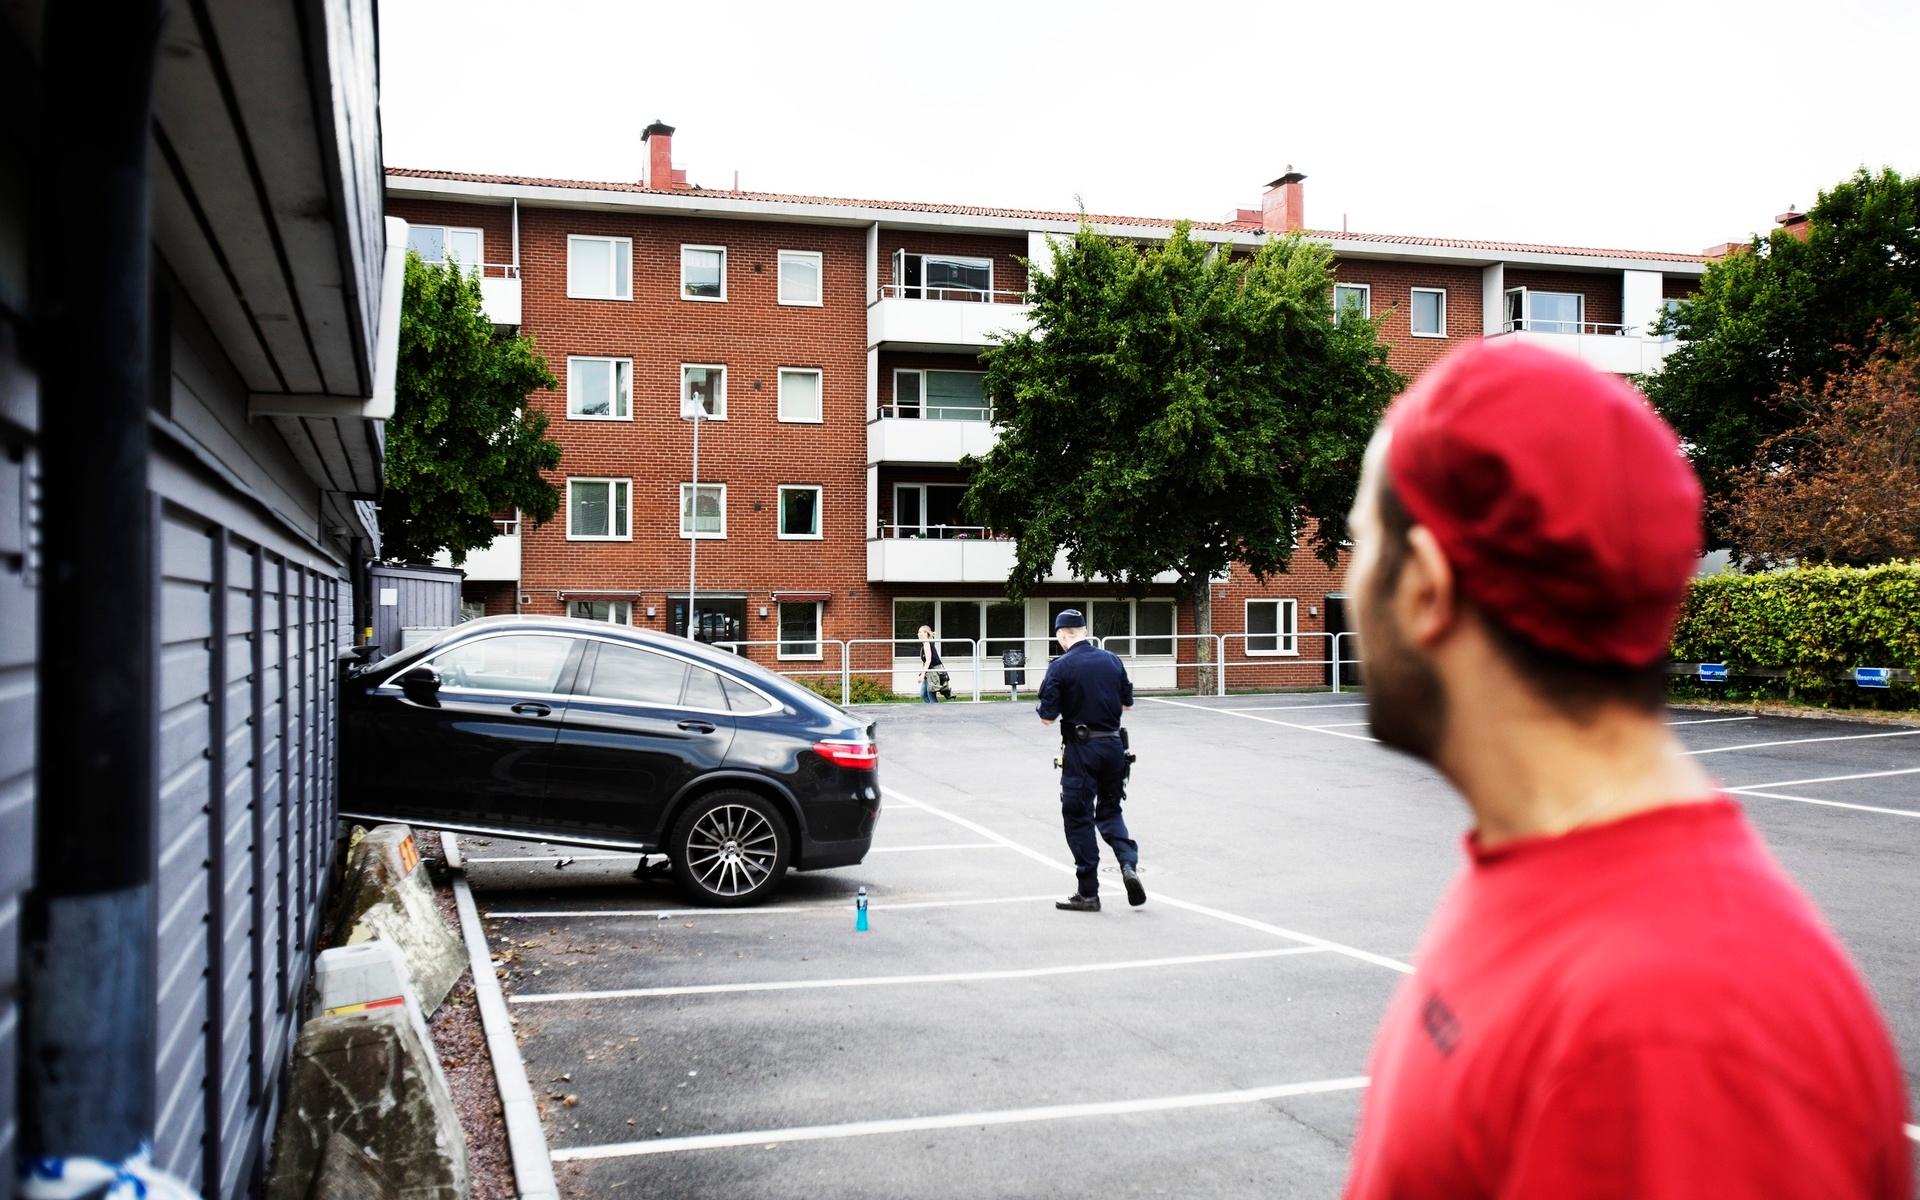 Vid 17-tiden på onsdagen larmades räddningstjänst, polis och ambulans till Brunnsbotroget på Hisingen efter att en personbil körts in i fasaden på en pizzeria. 